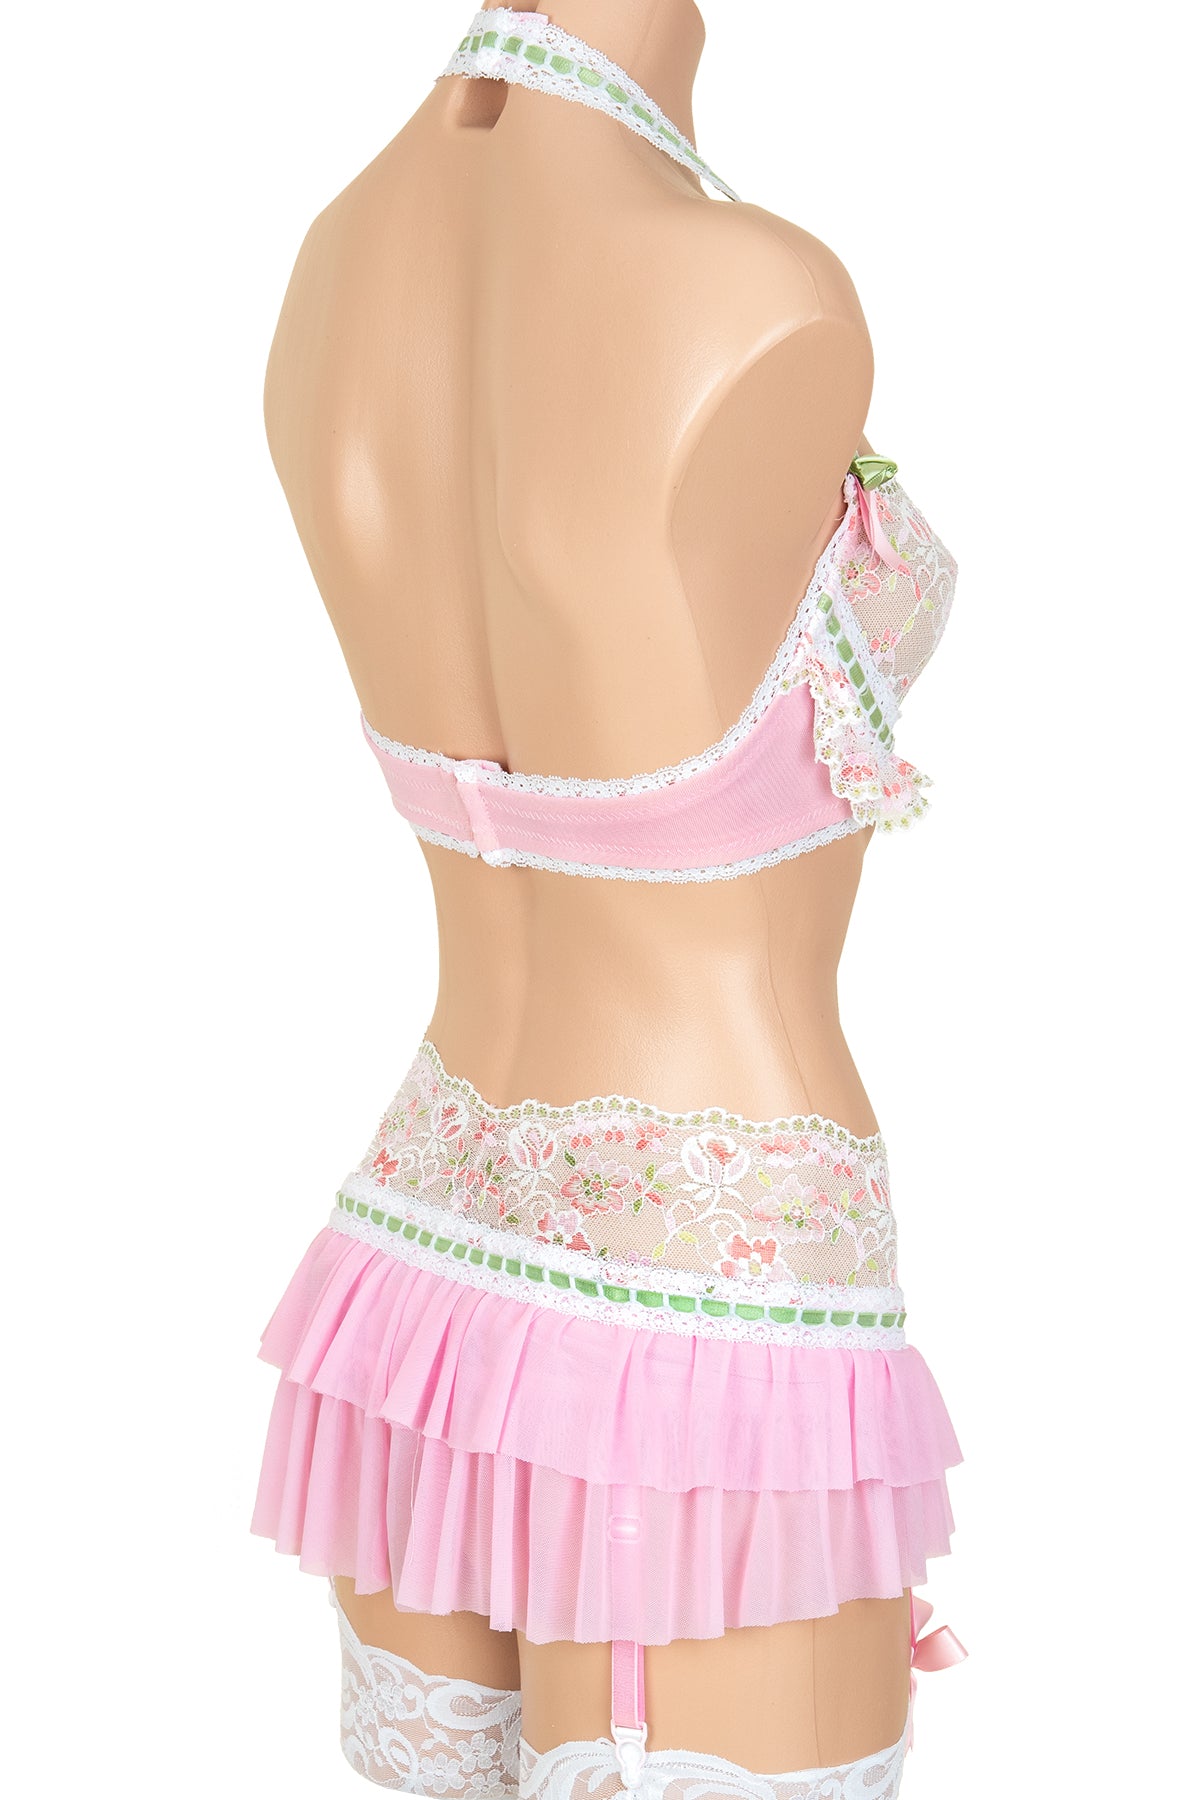 Lollipop Lace-Up Garter Skirt